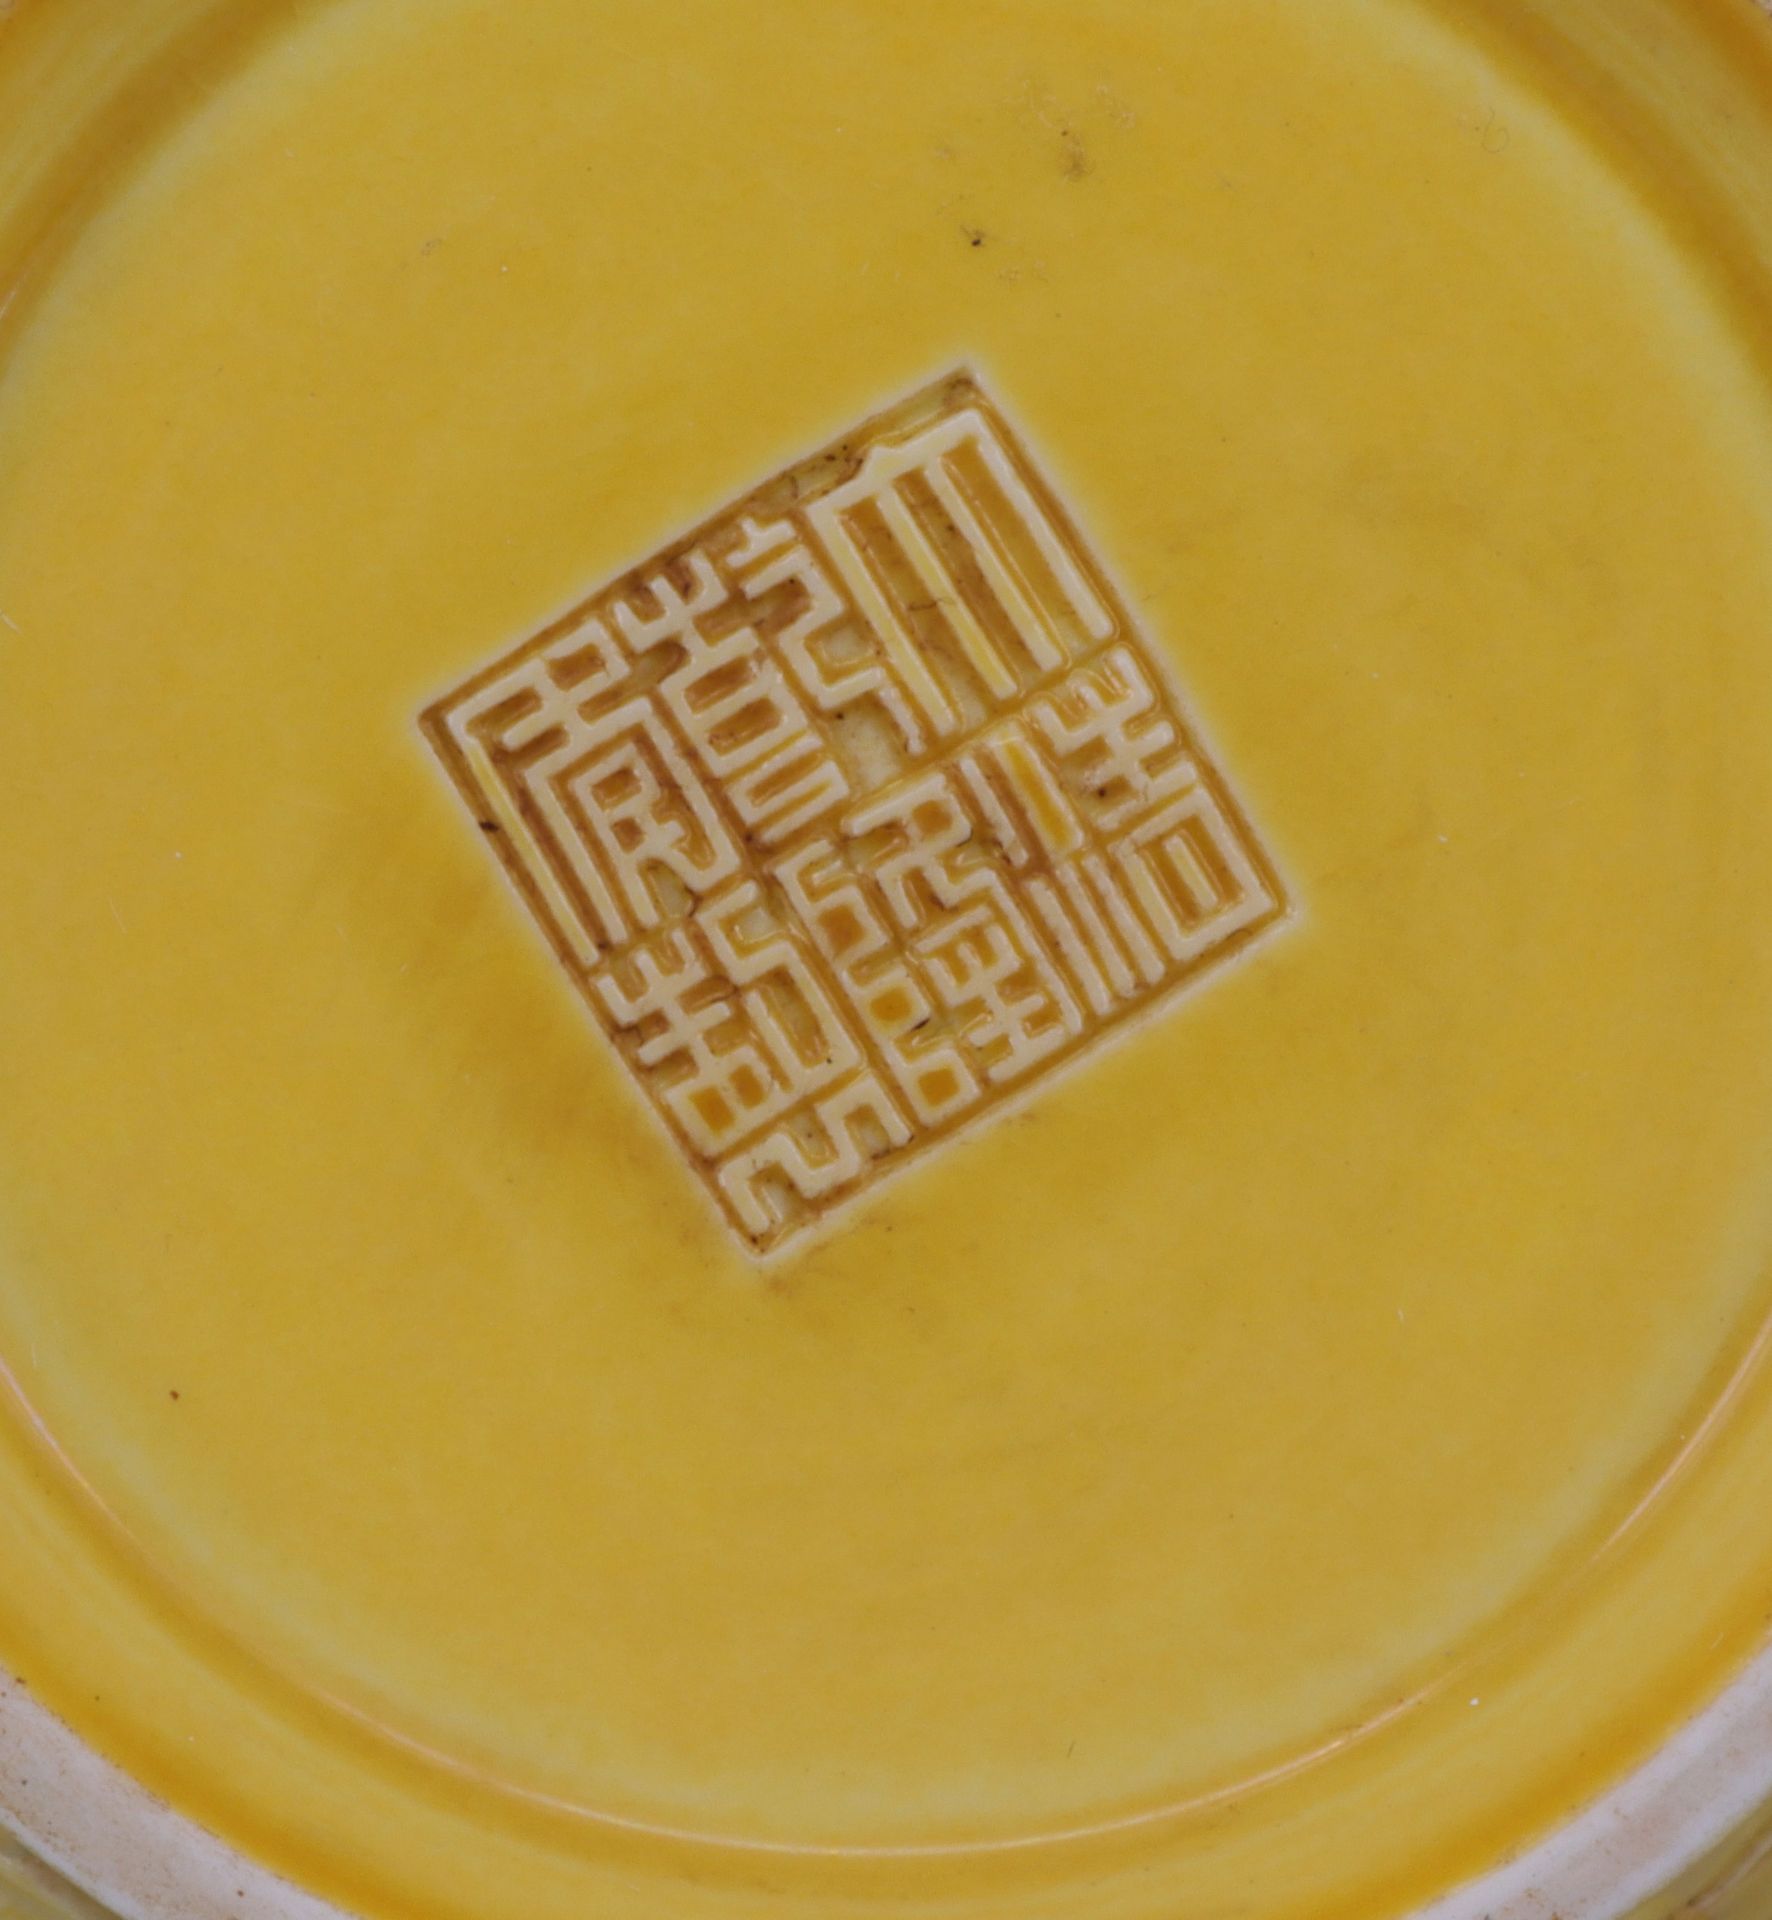 China, 20. Jh., gelbe Vase, Porzellan, mit reliefiertem Drachendekor, apokryphe Marke, alte - Image 3 of 5